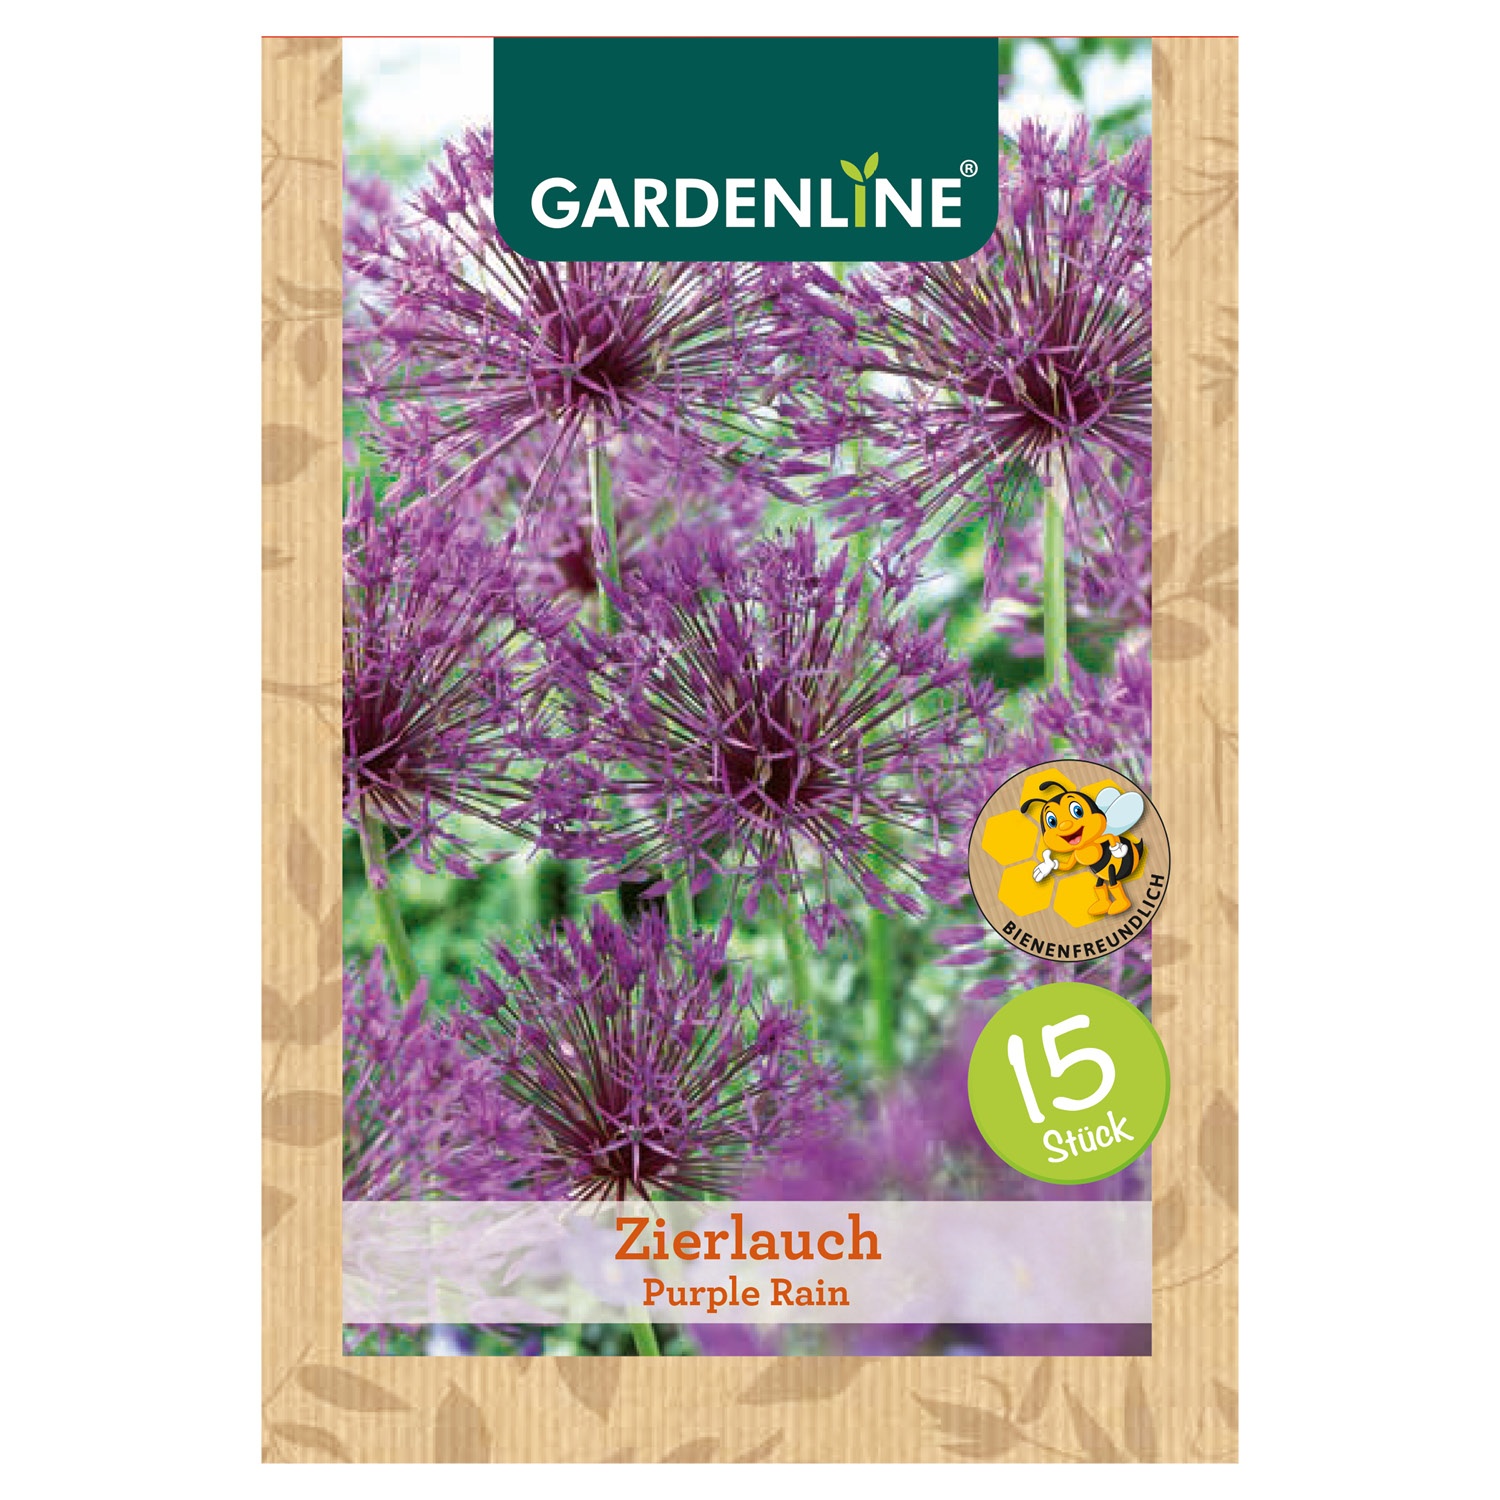 GARDENLINE® Allium-Zierlauch-Mischung